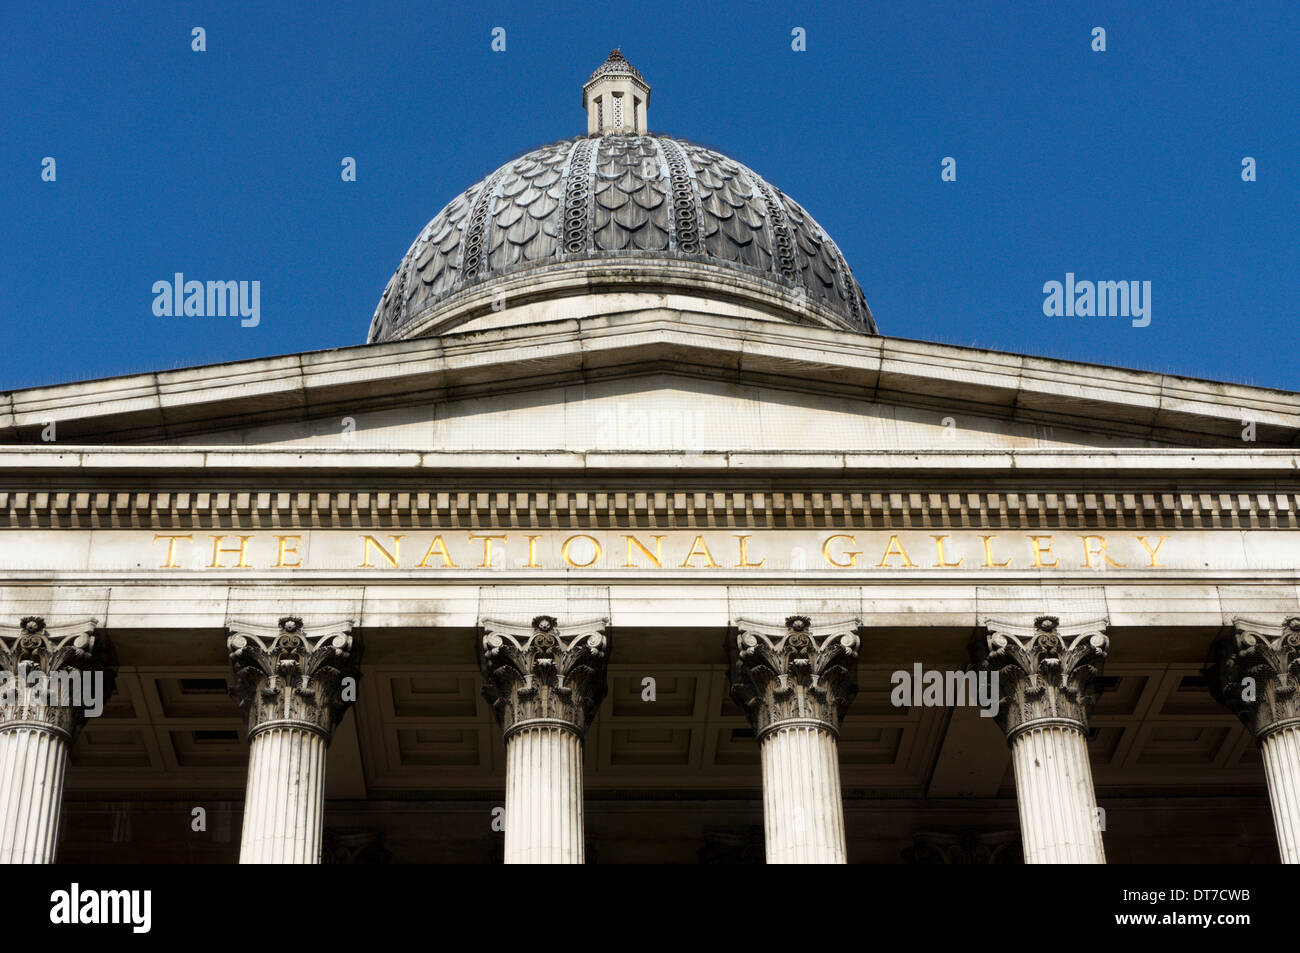 Der Name des der Nationalgalerie geschnitzt unter dem Giebel an der Vorderseite des Gebäudes, London, England. Stockfoto